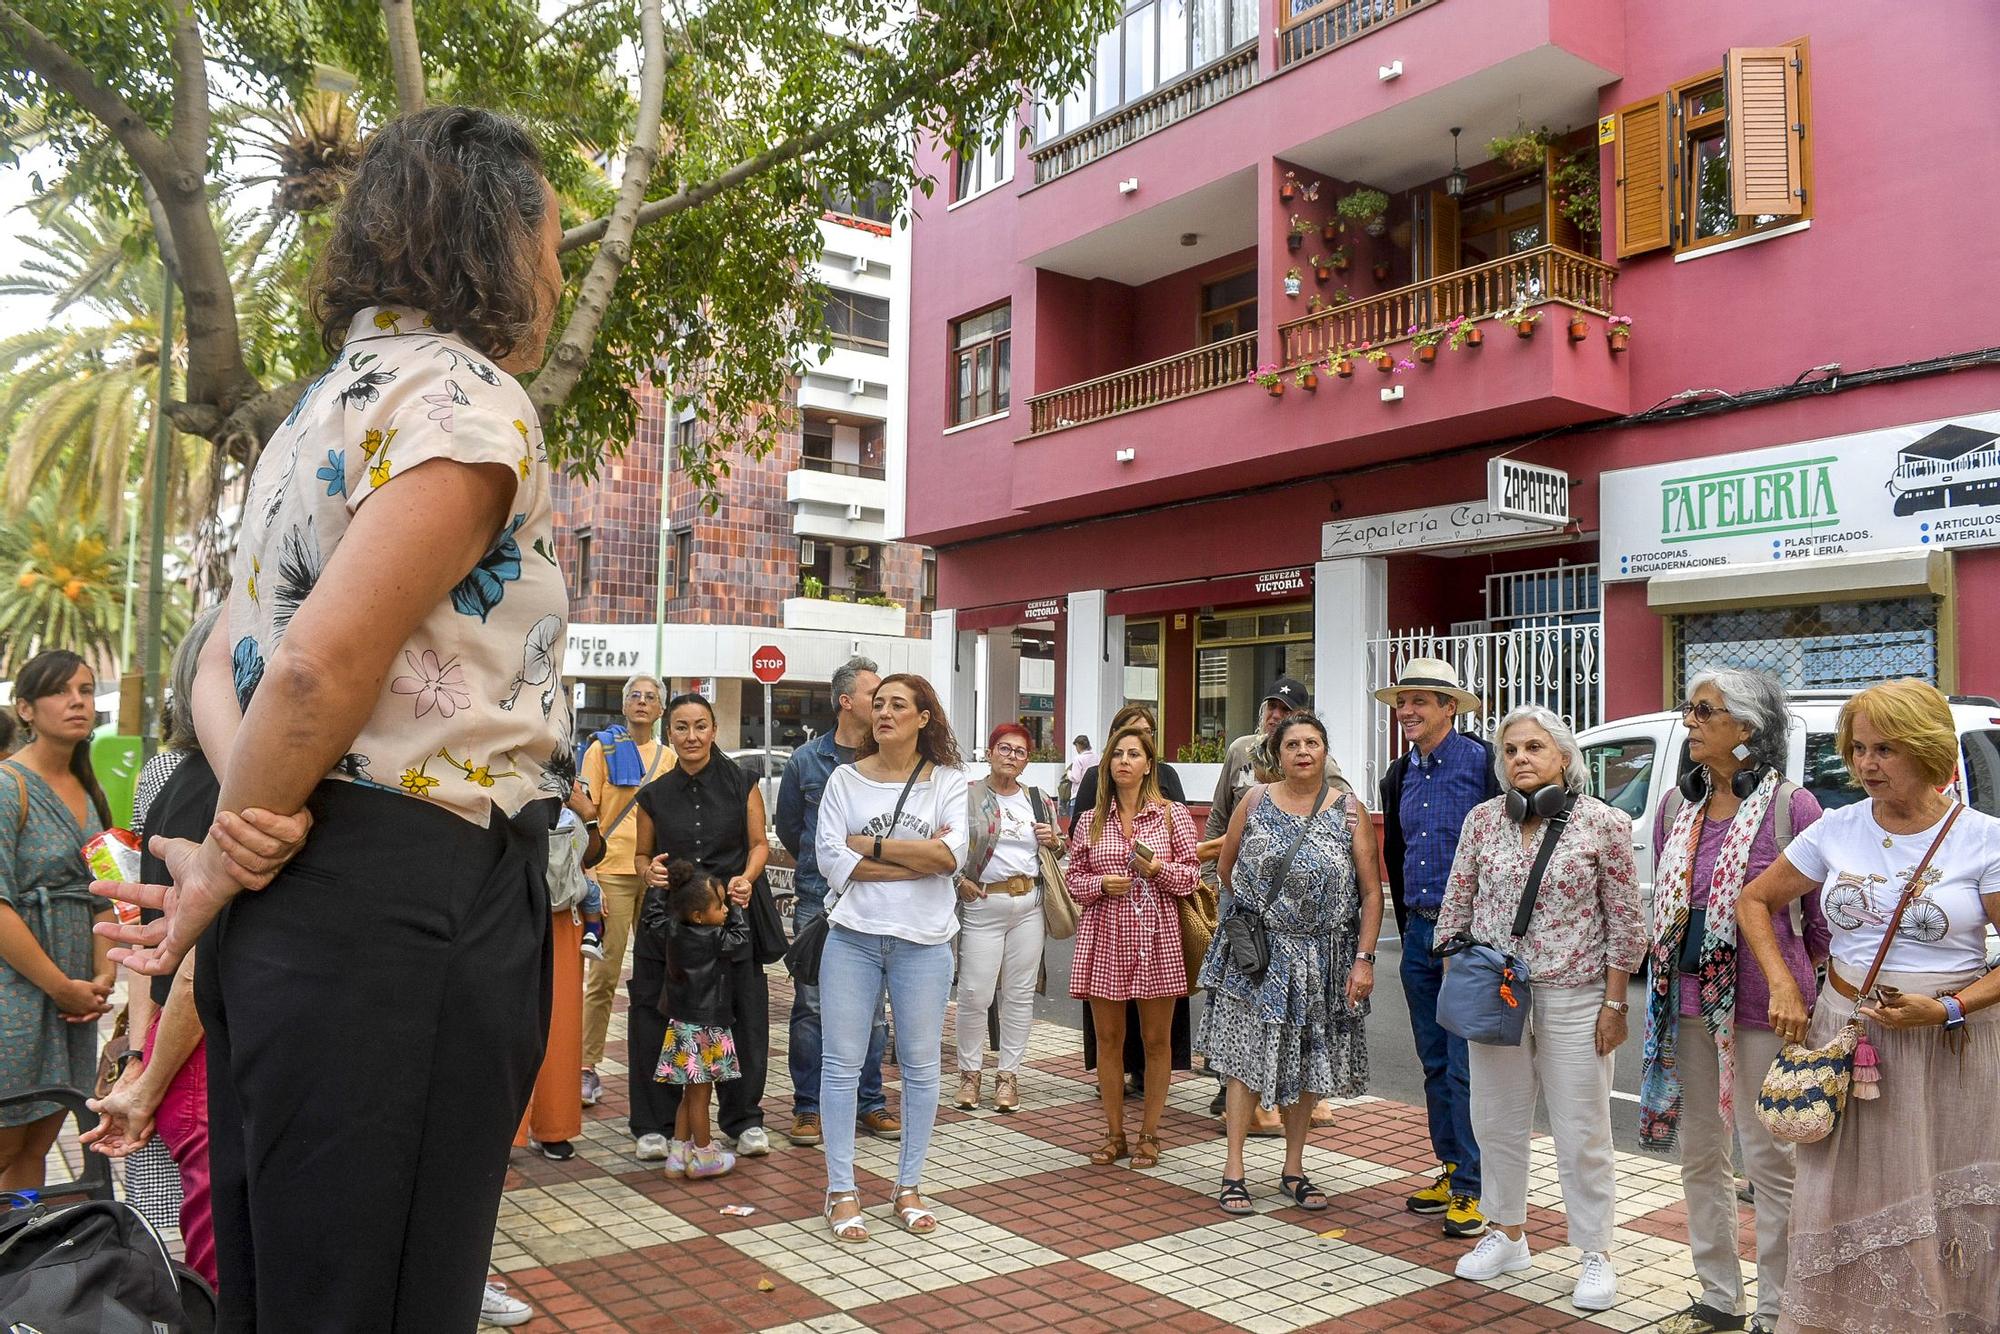 La poesía visual toma las calles del Barrio de Arenales en la capital grancanaria